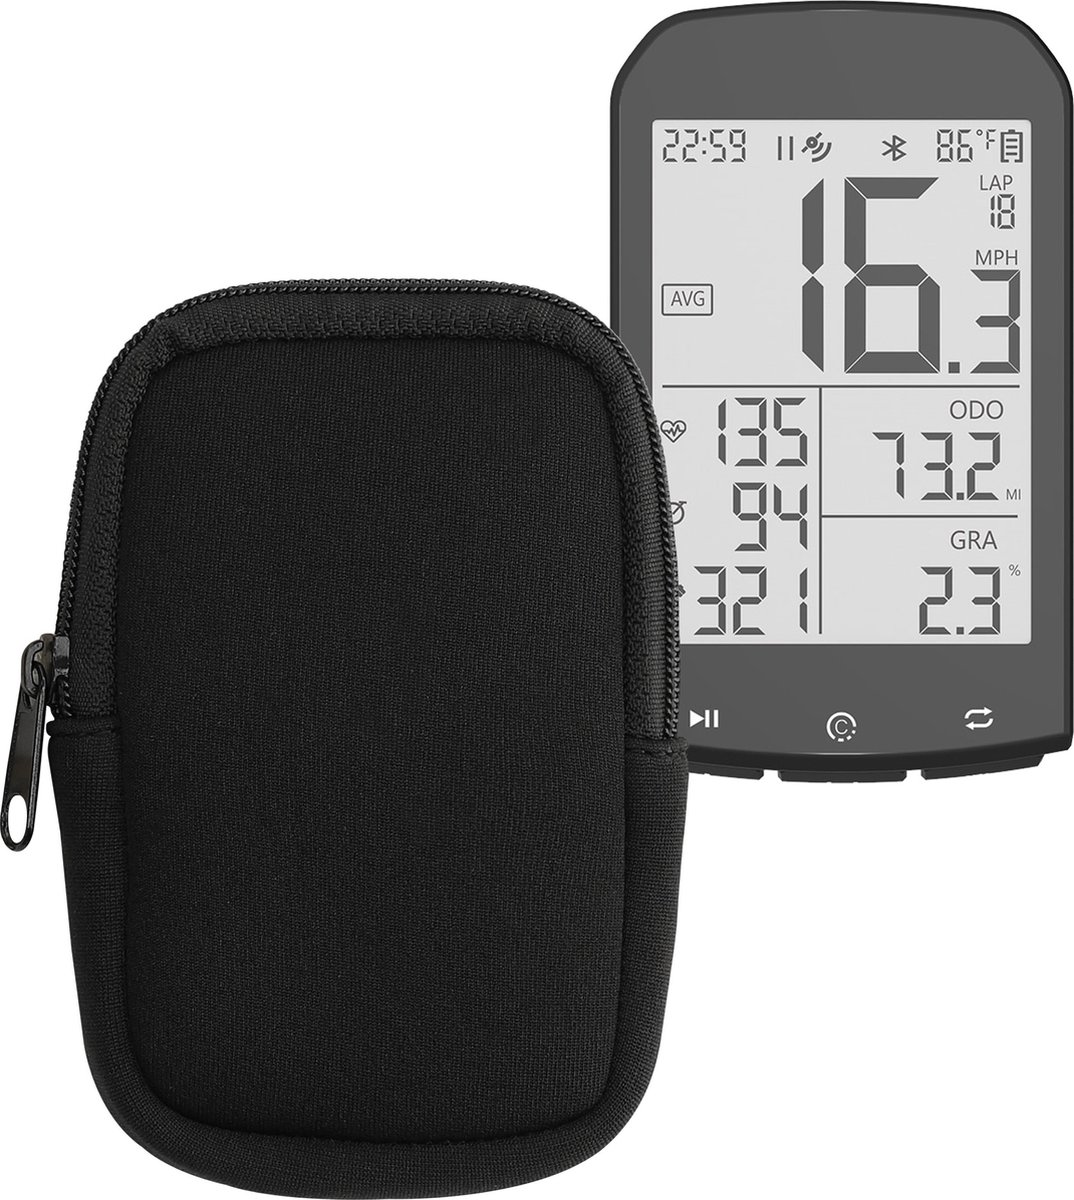 kwmobile Tas compatibel met CYCPLUS M1 - Hoes voor Fiets GPS - Van neopreen - Hoesje voor fietsnavigatie in zwart.